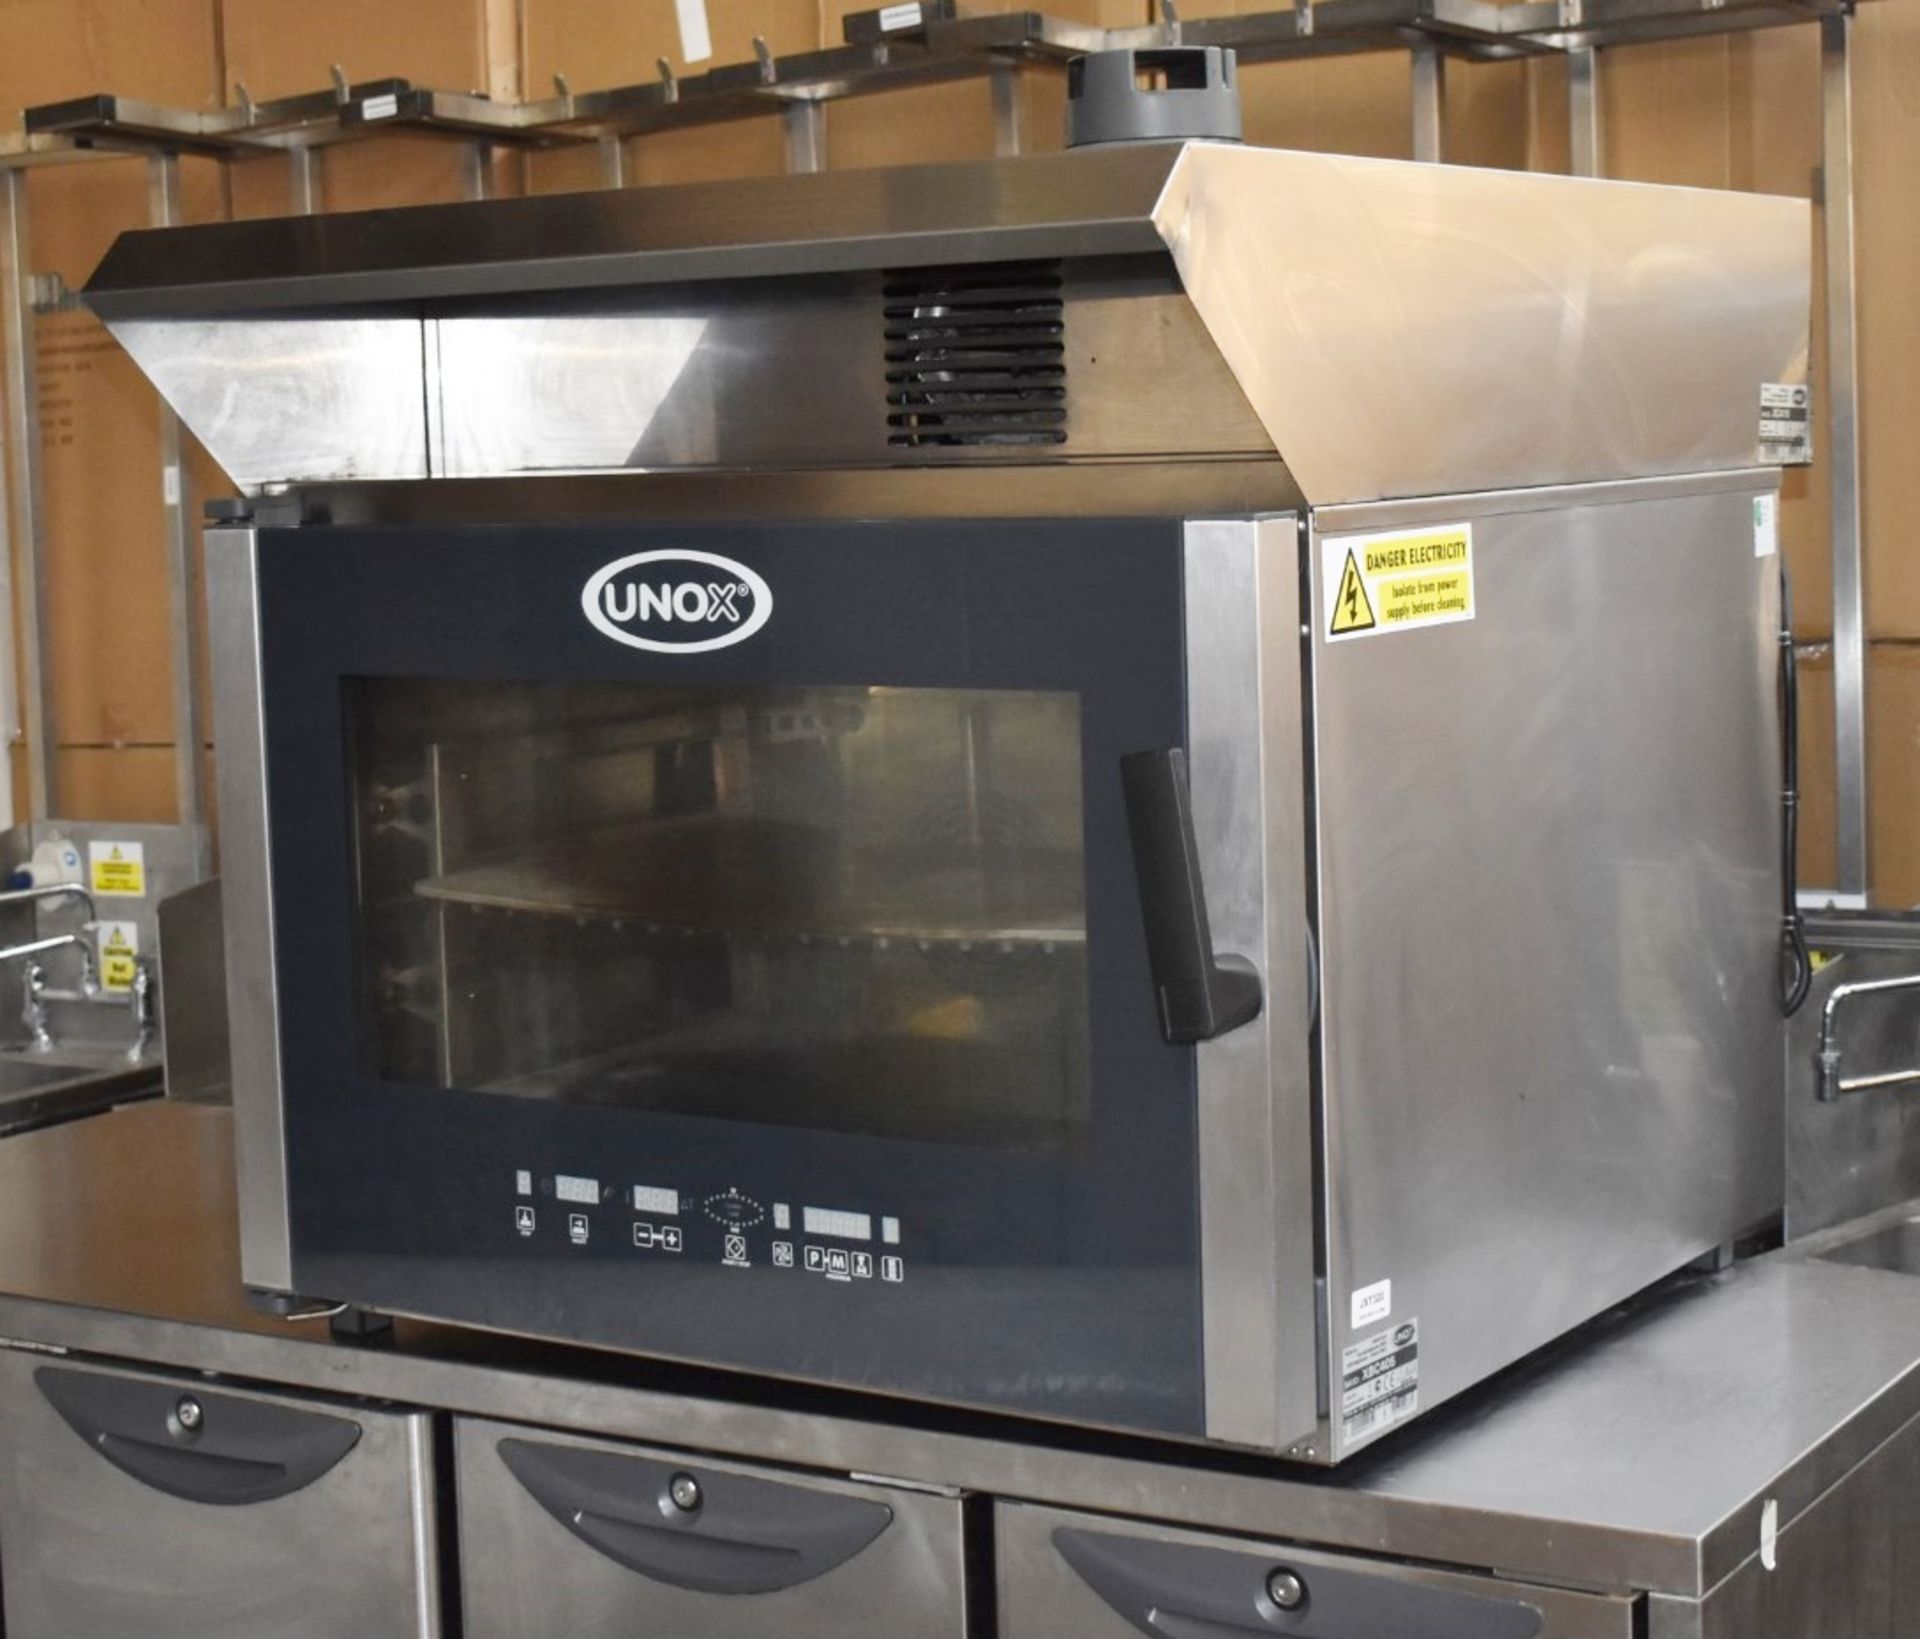 1 x Unox XBC405 Bakery Combi Oven - 3 Phase